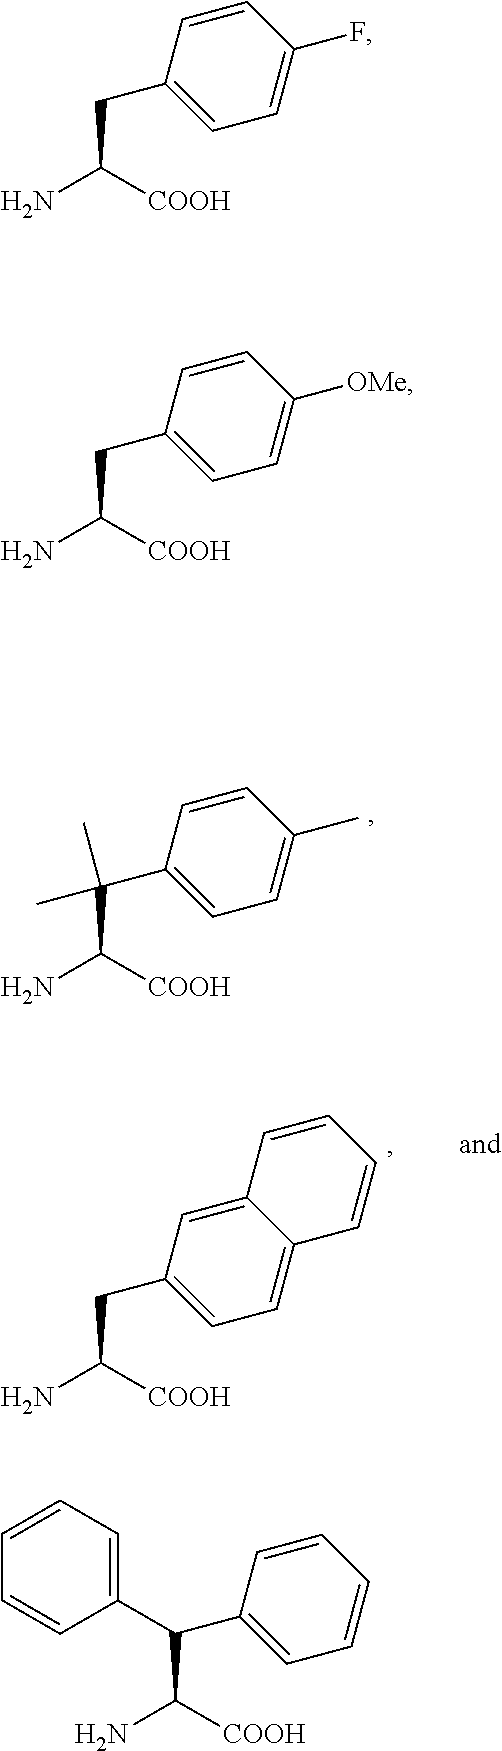 Pthr1 receptor compounds